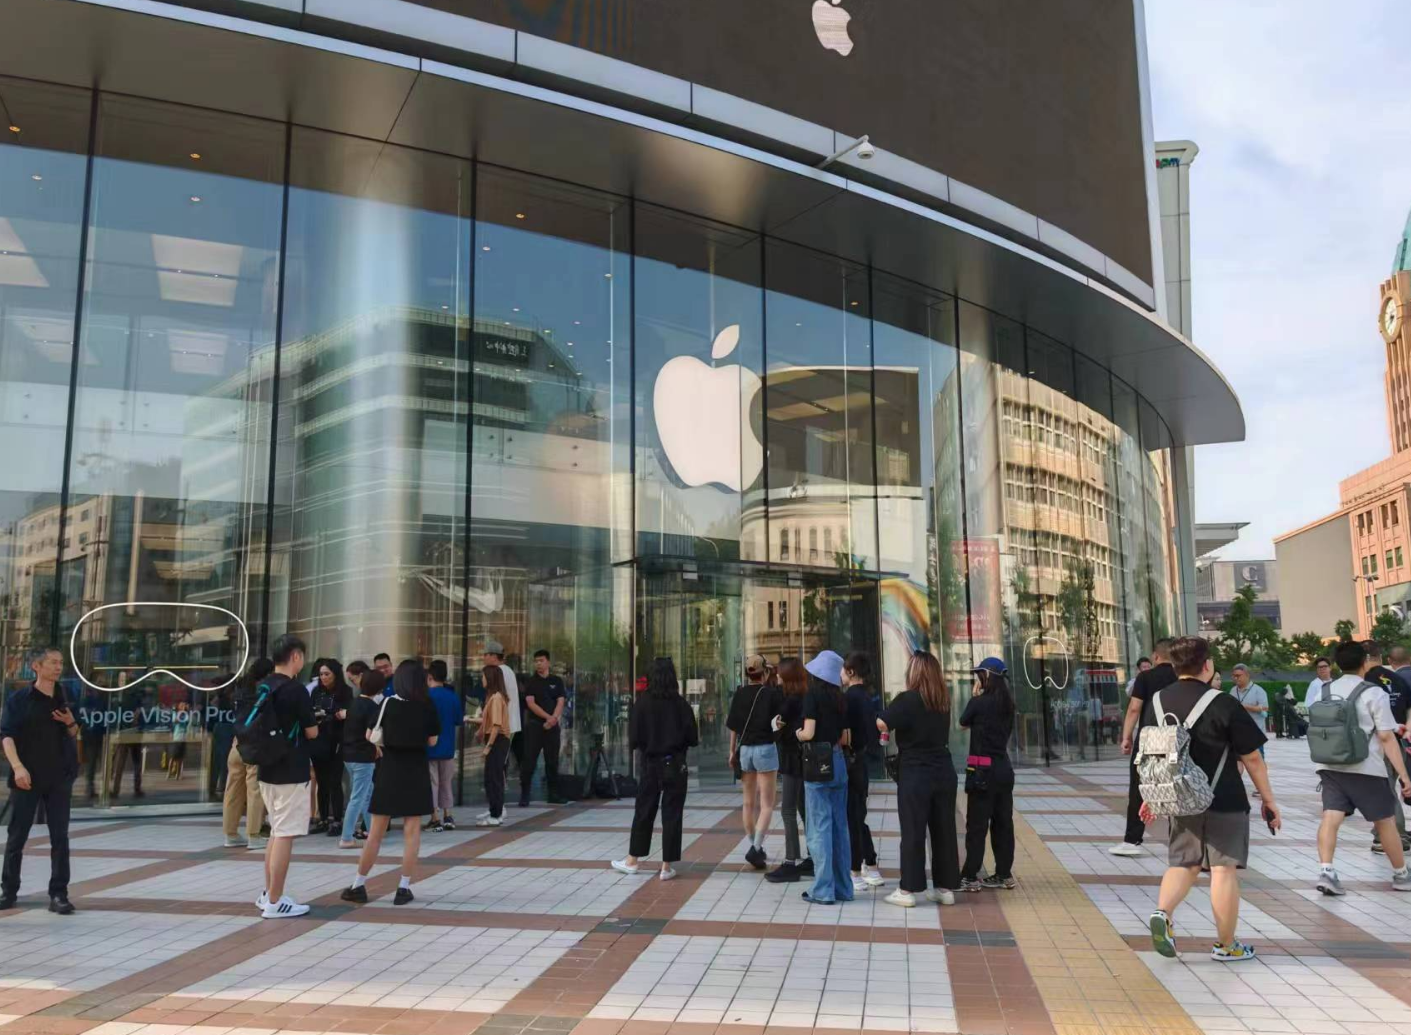 定价近3万的国行版苹果Vision Pro正式开卖，中国为美国本土外首批开卖国家